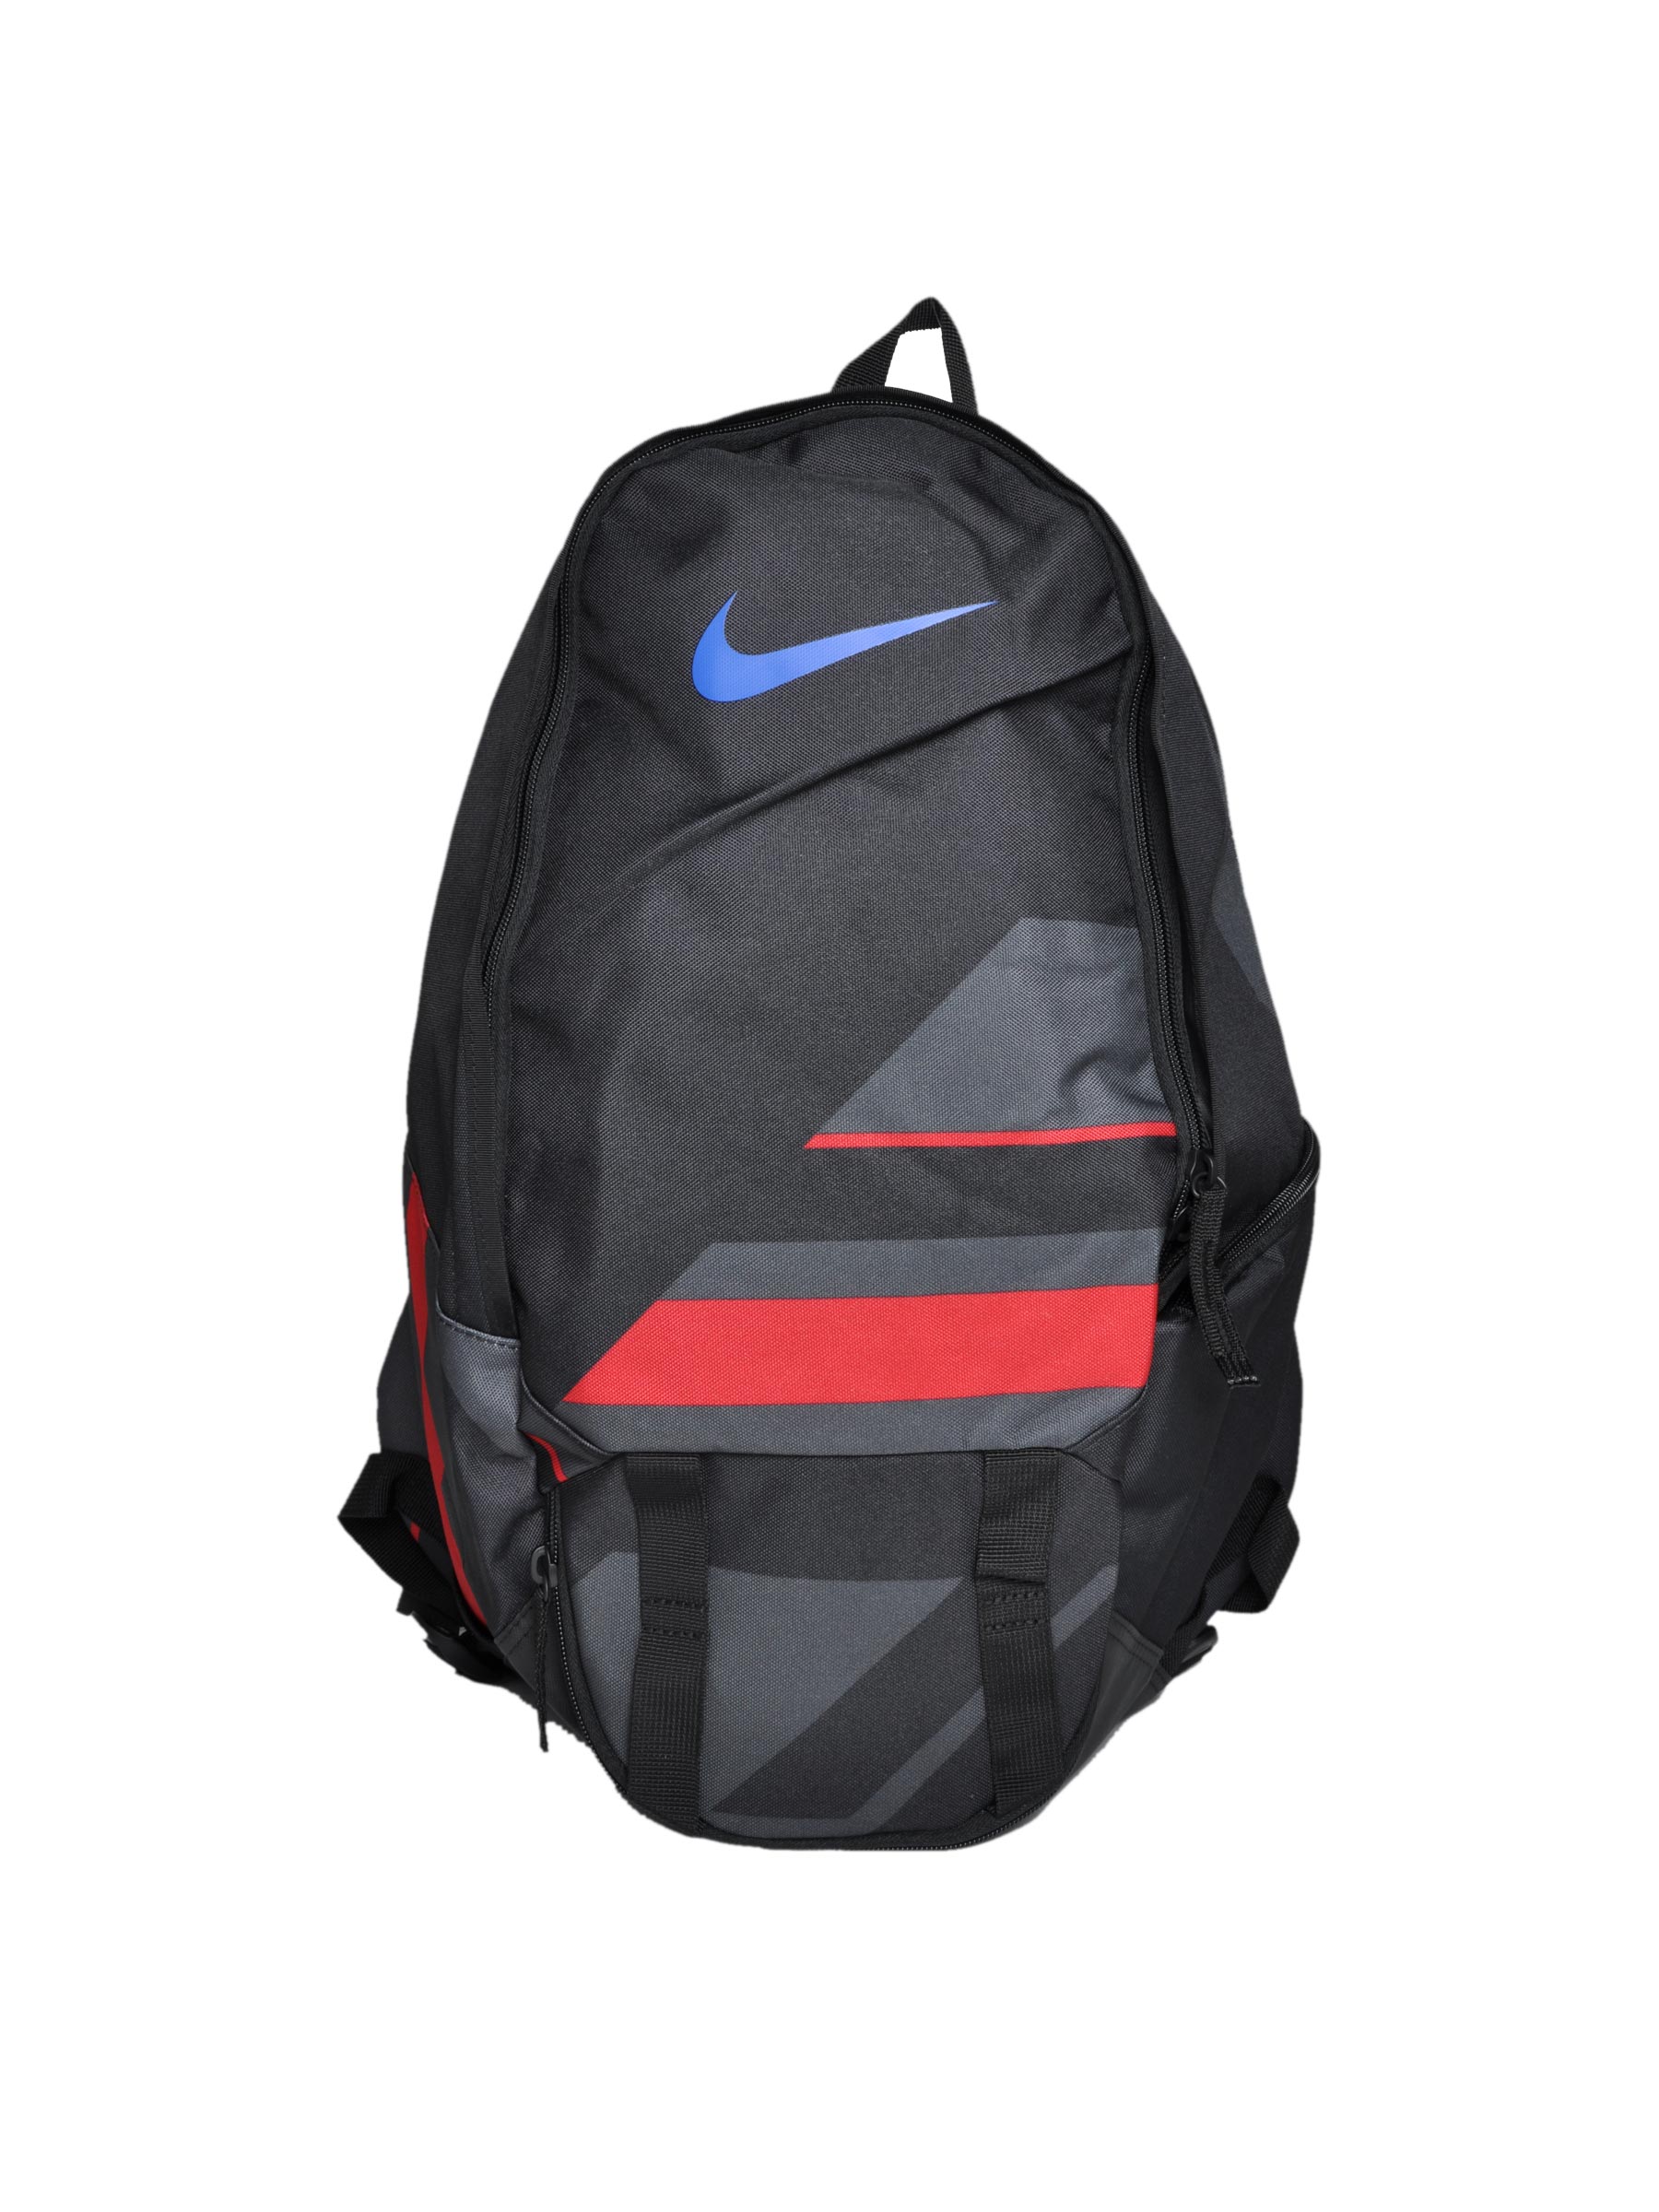 Nike Unisex Football Black Backpacks